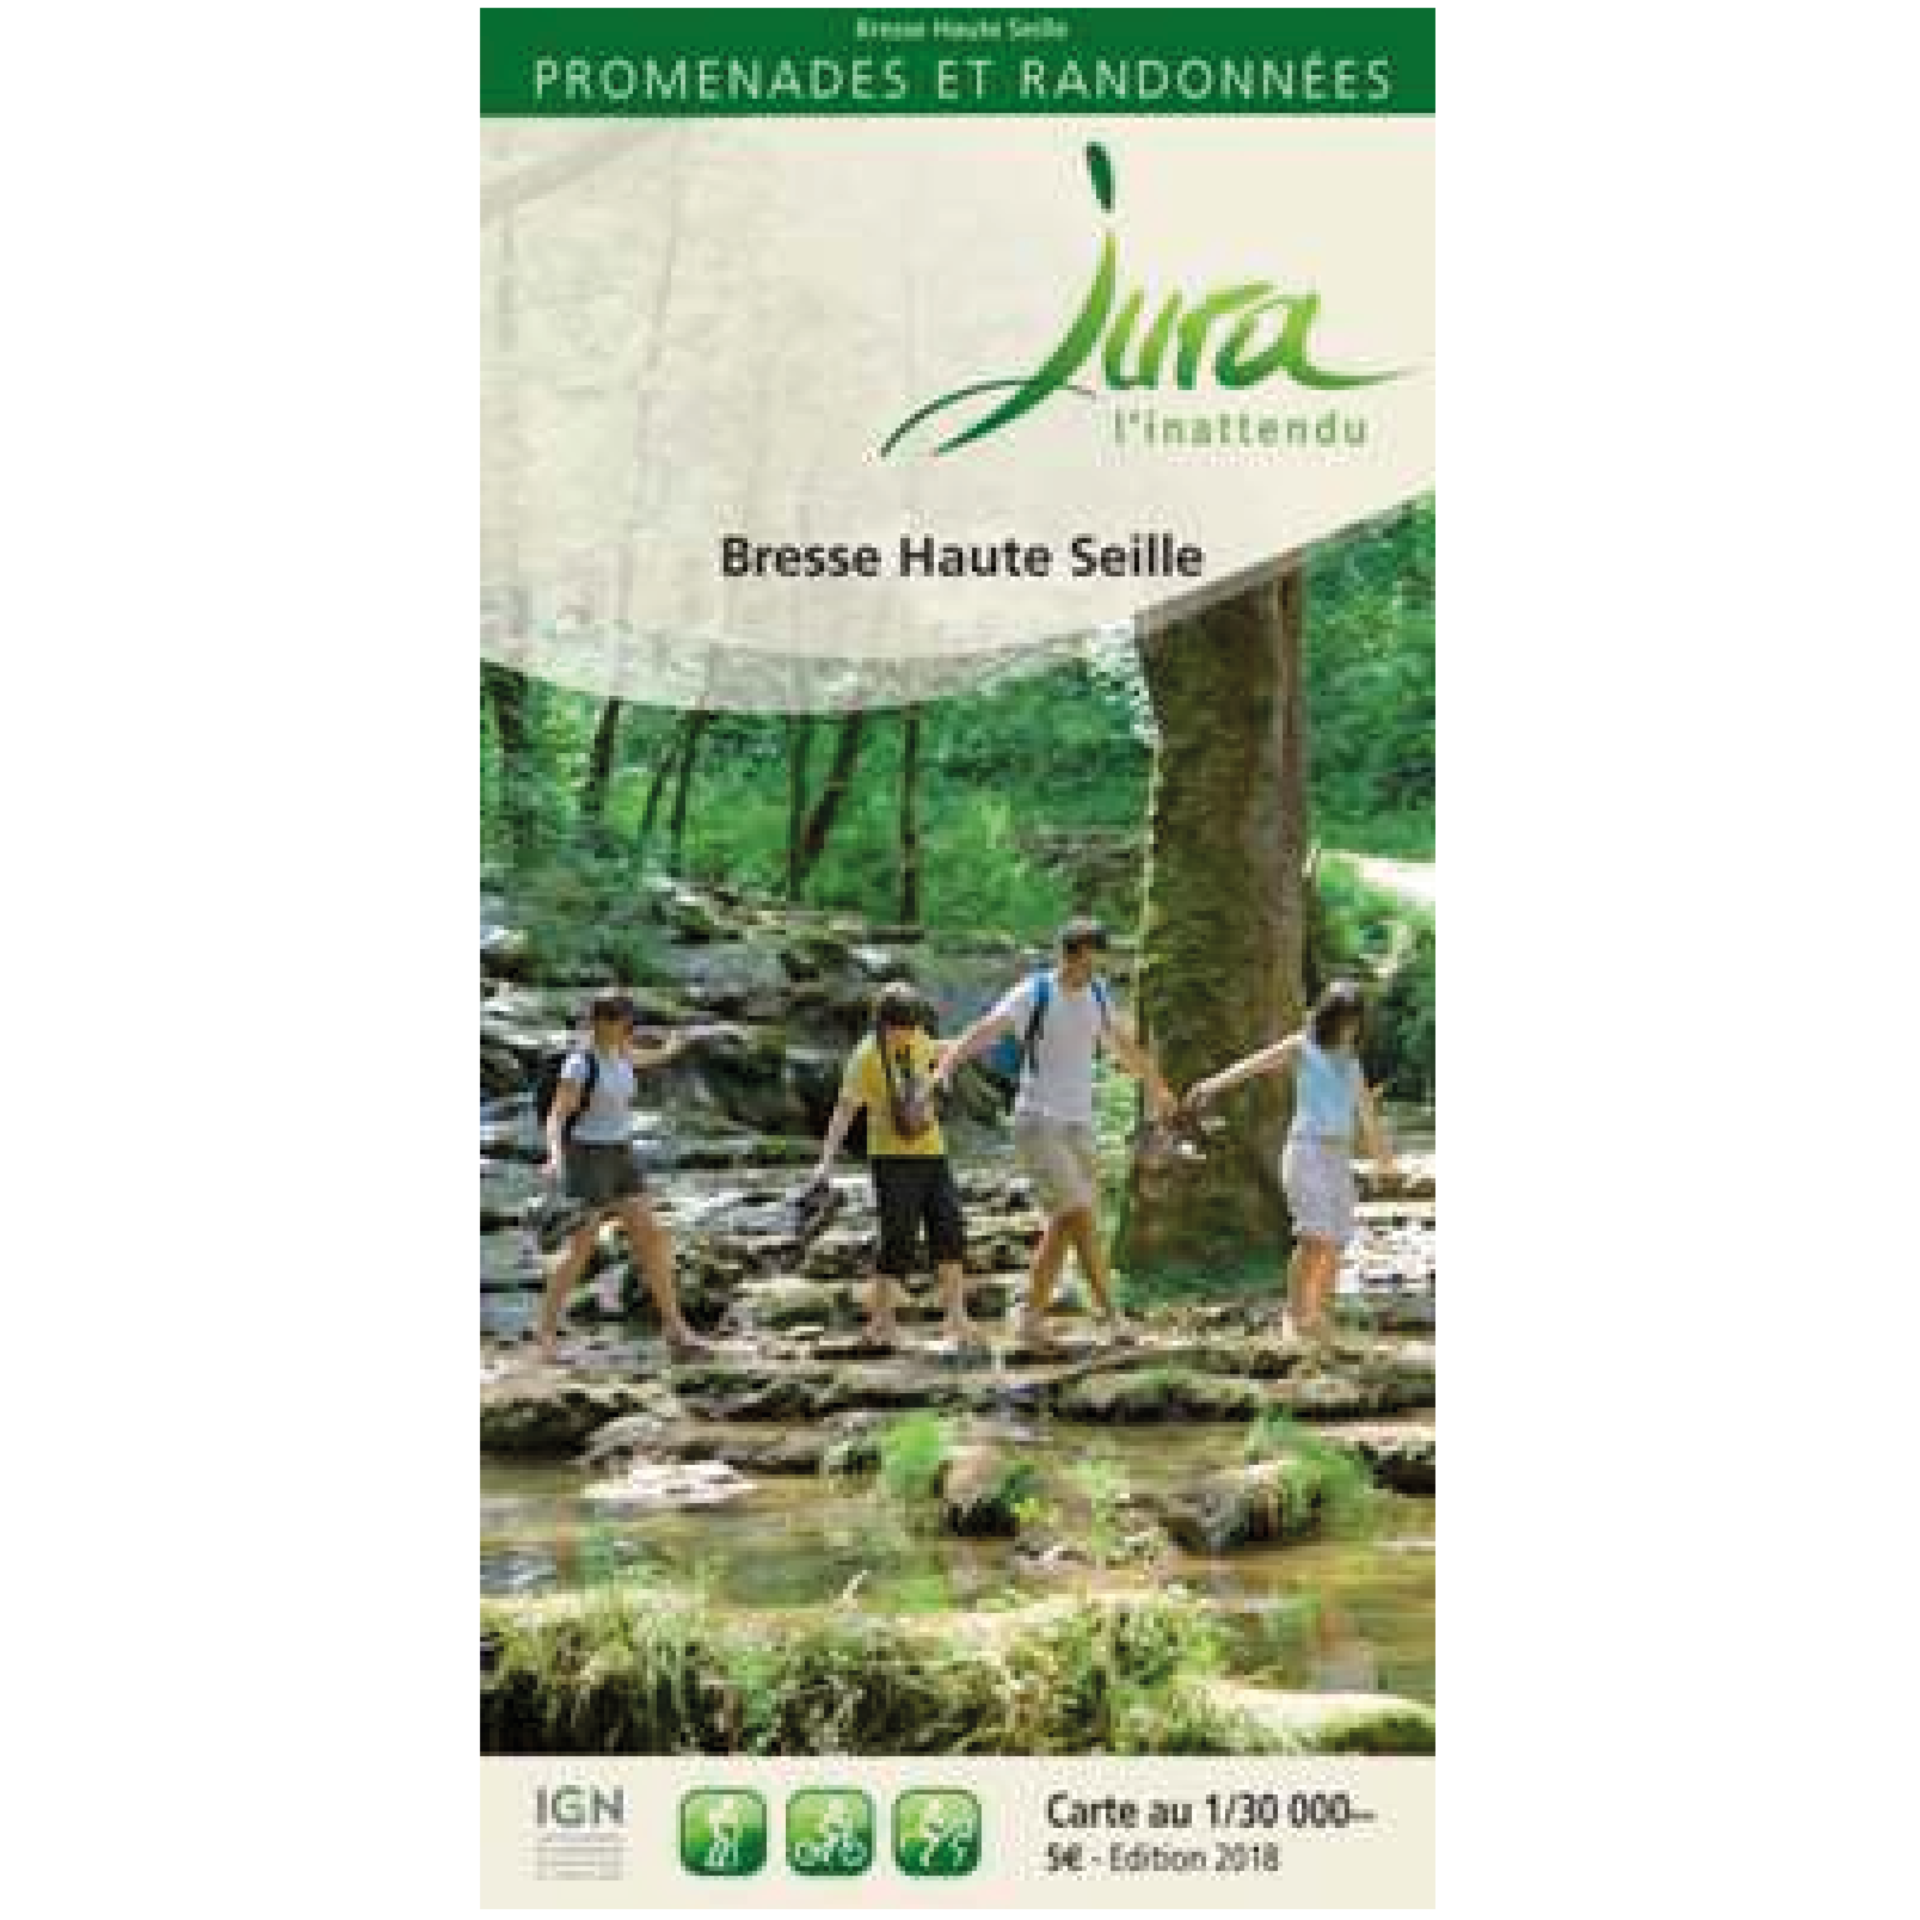 Carto guide Bresse Haute Seille, Jura